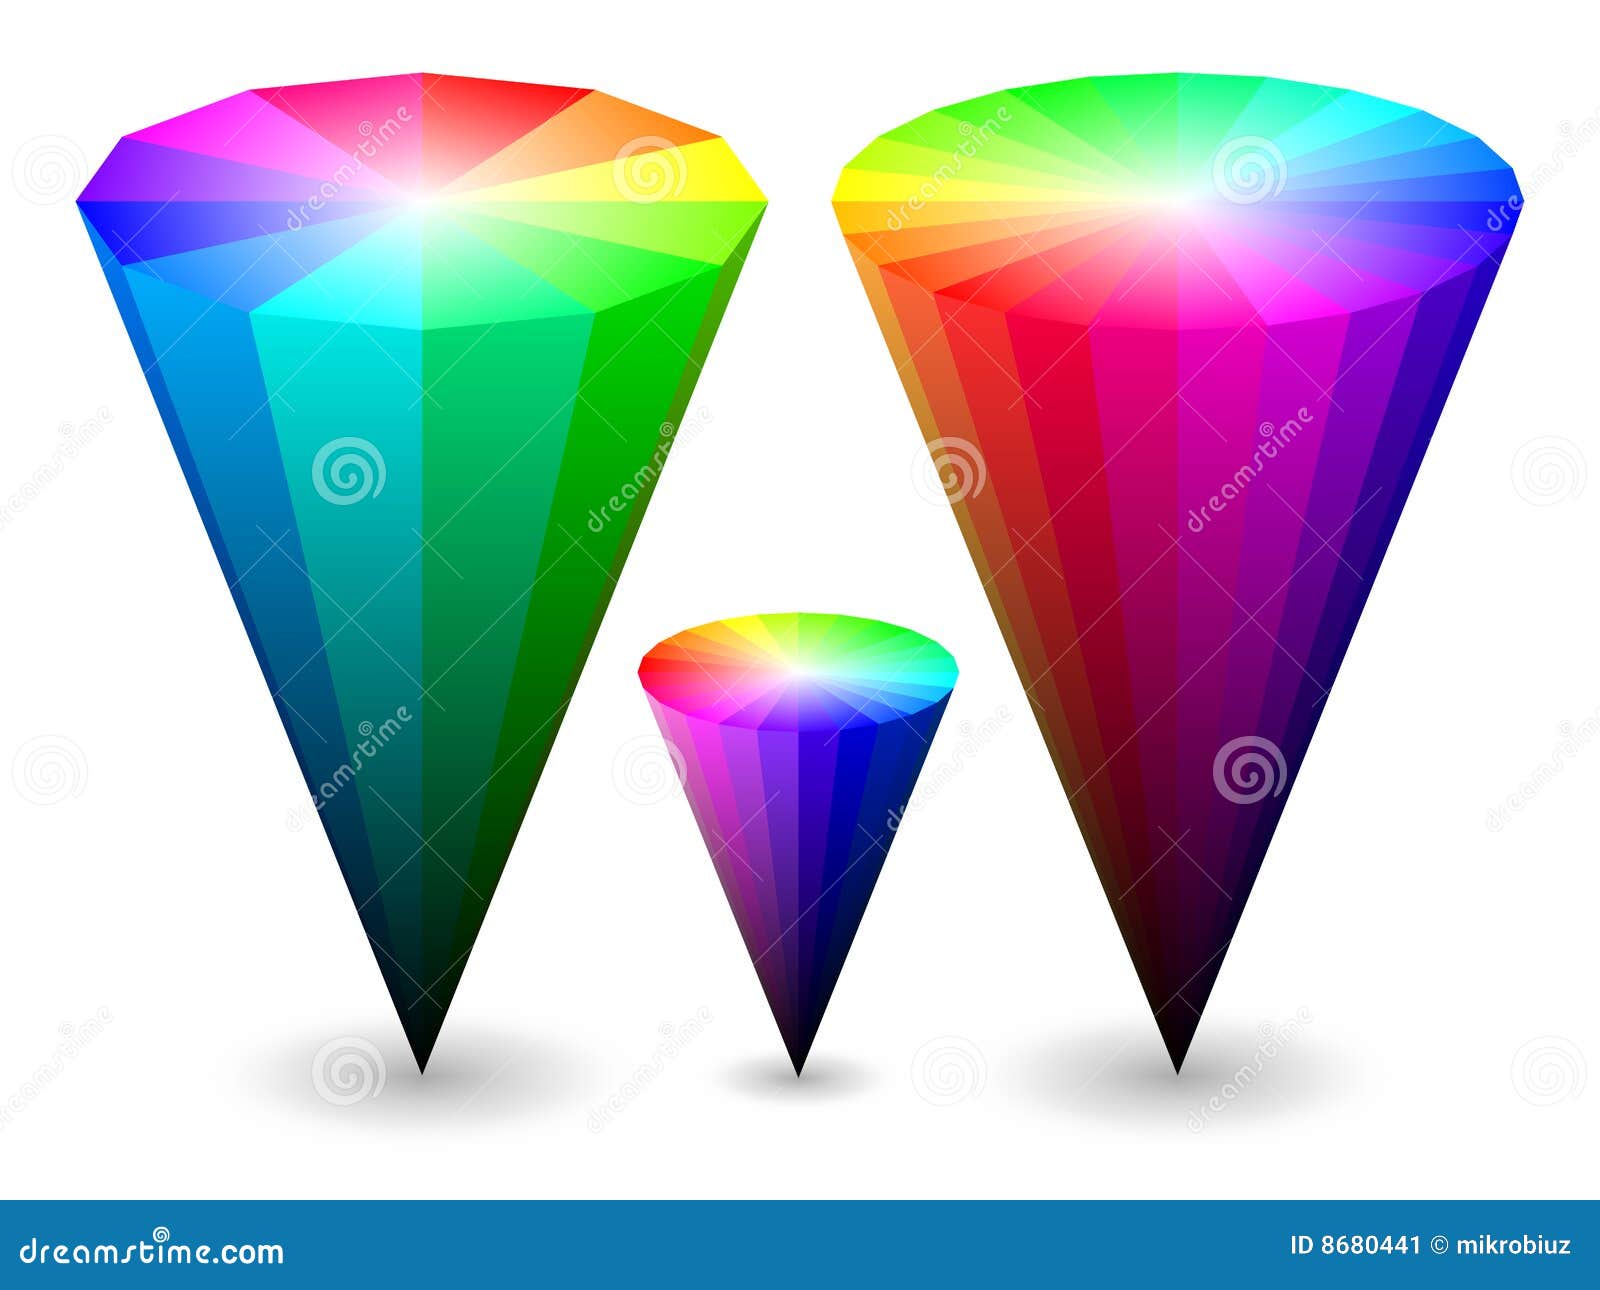 palette 8 color rainbow Image 3D  Color Stock 8680441  Cones Image: